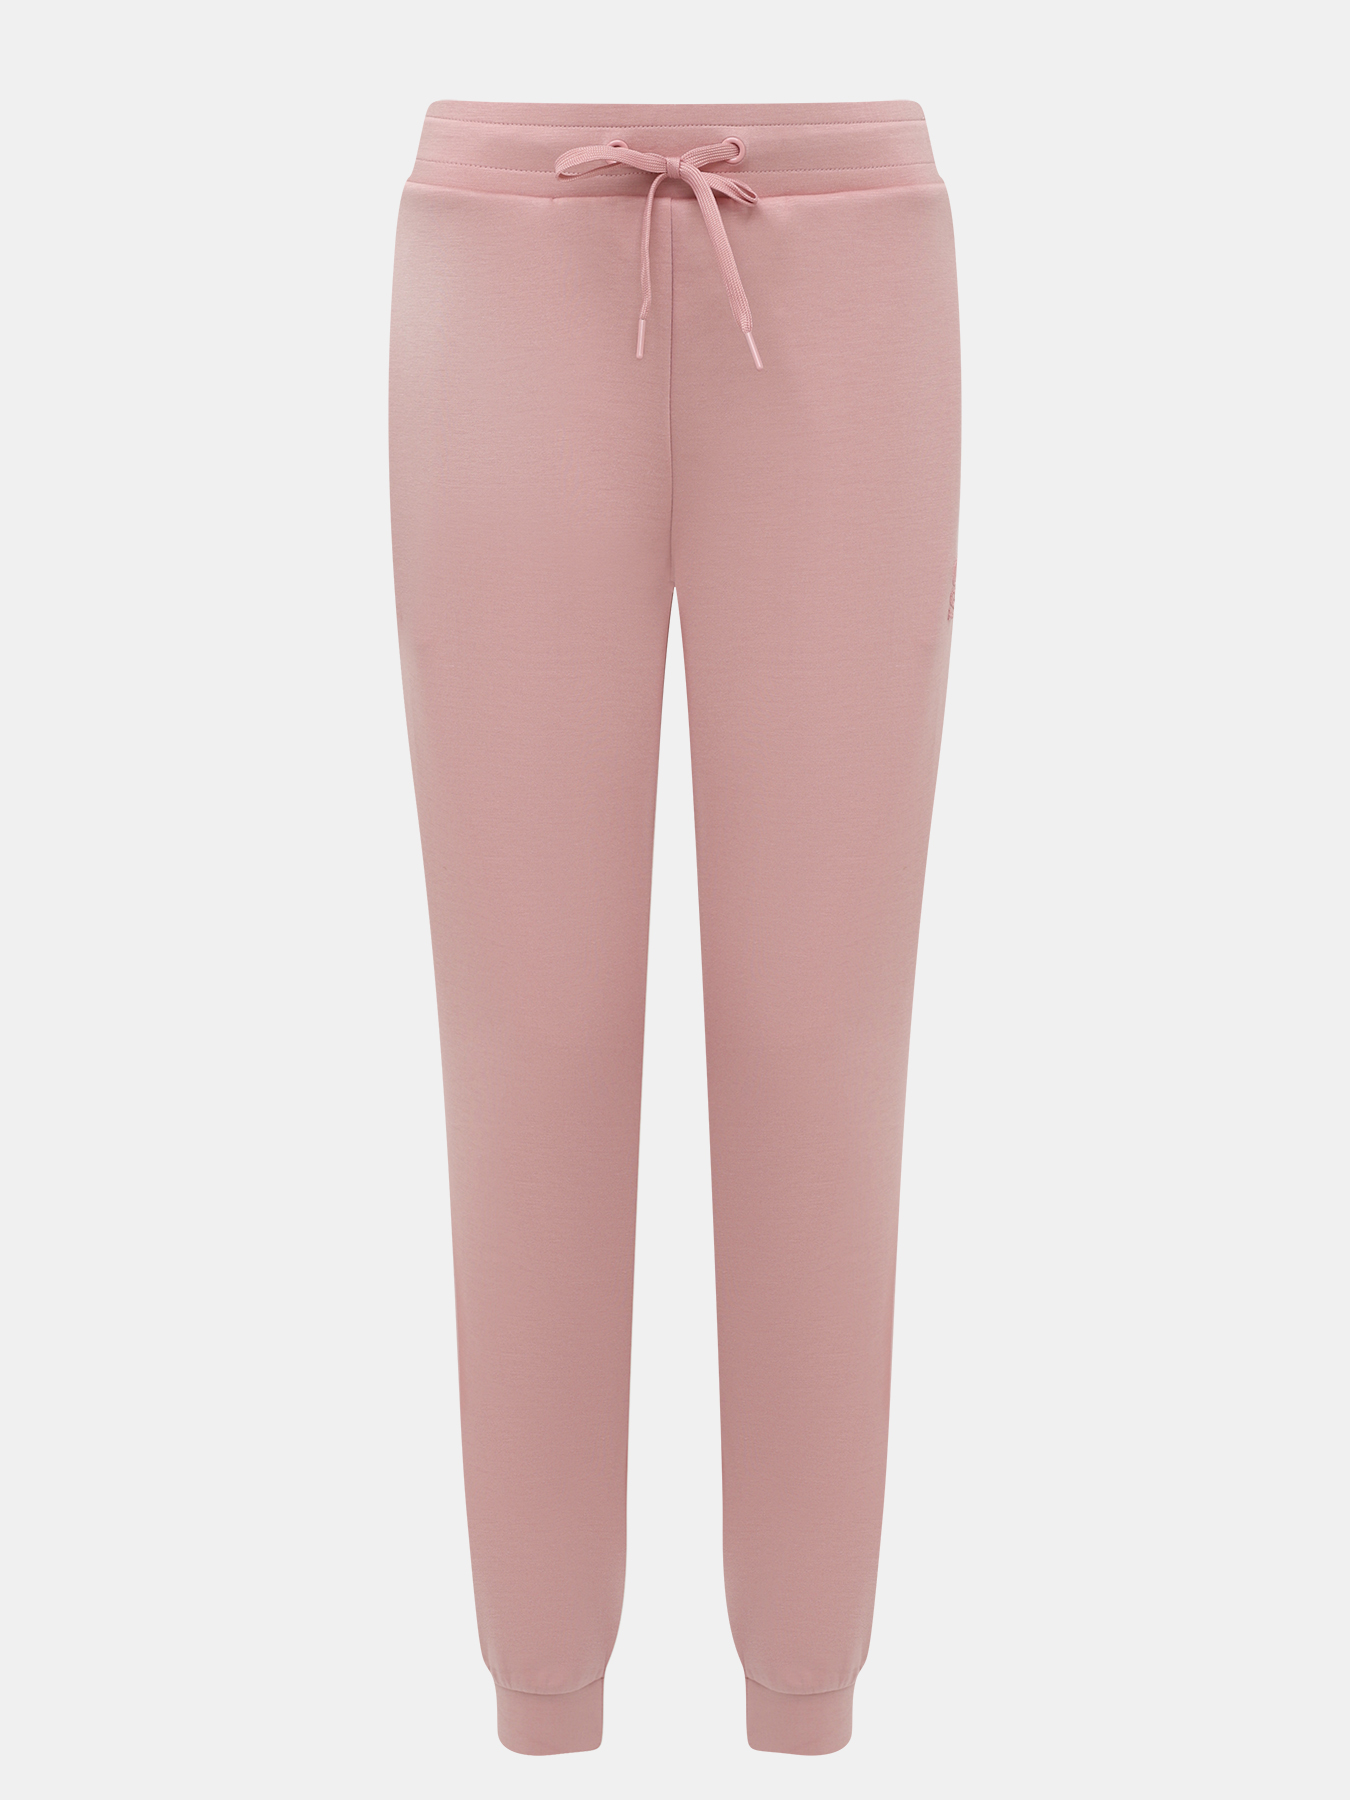 Спортивные брюки женские Orsa Orange 450552 розовые 50 RU